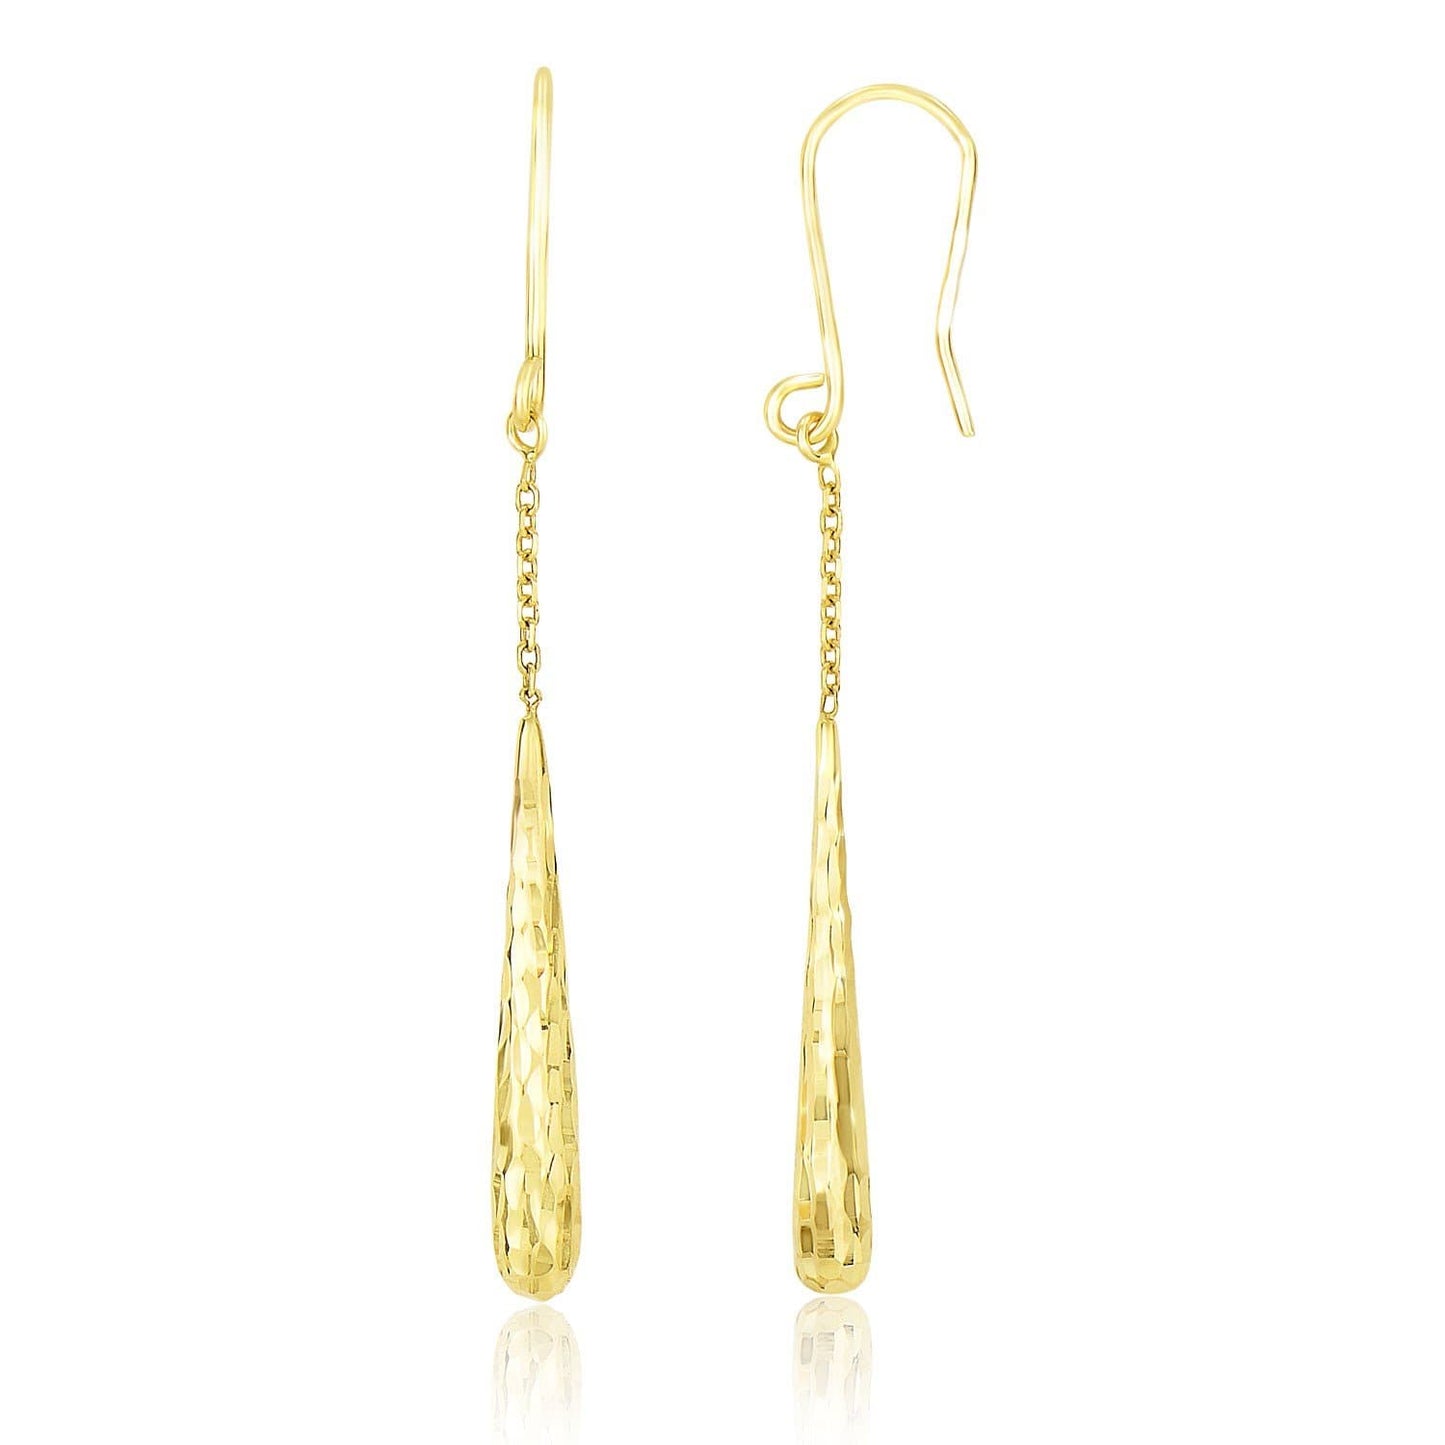 14K Yellow Gold Long Chain Drop Earrings with Diamond Cut Teardrops